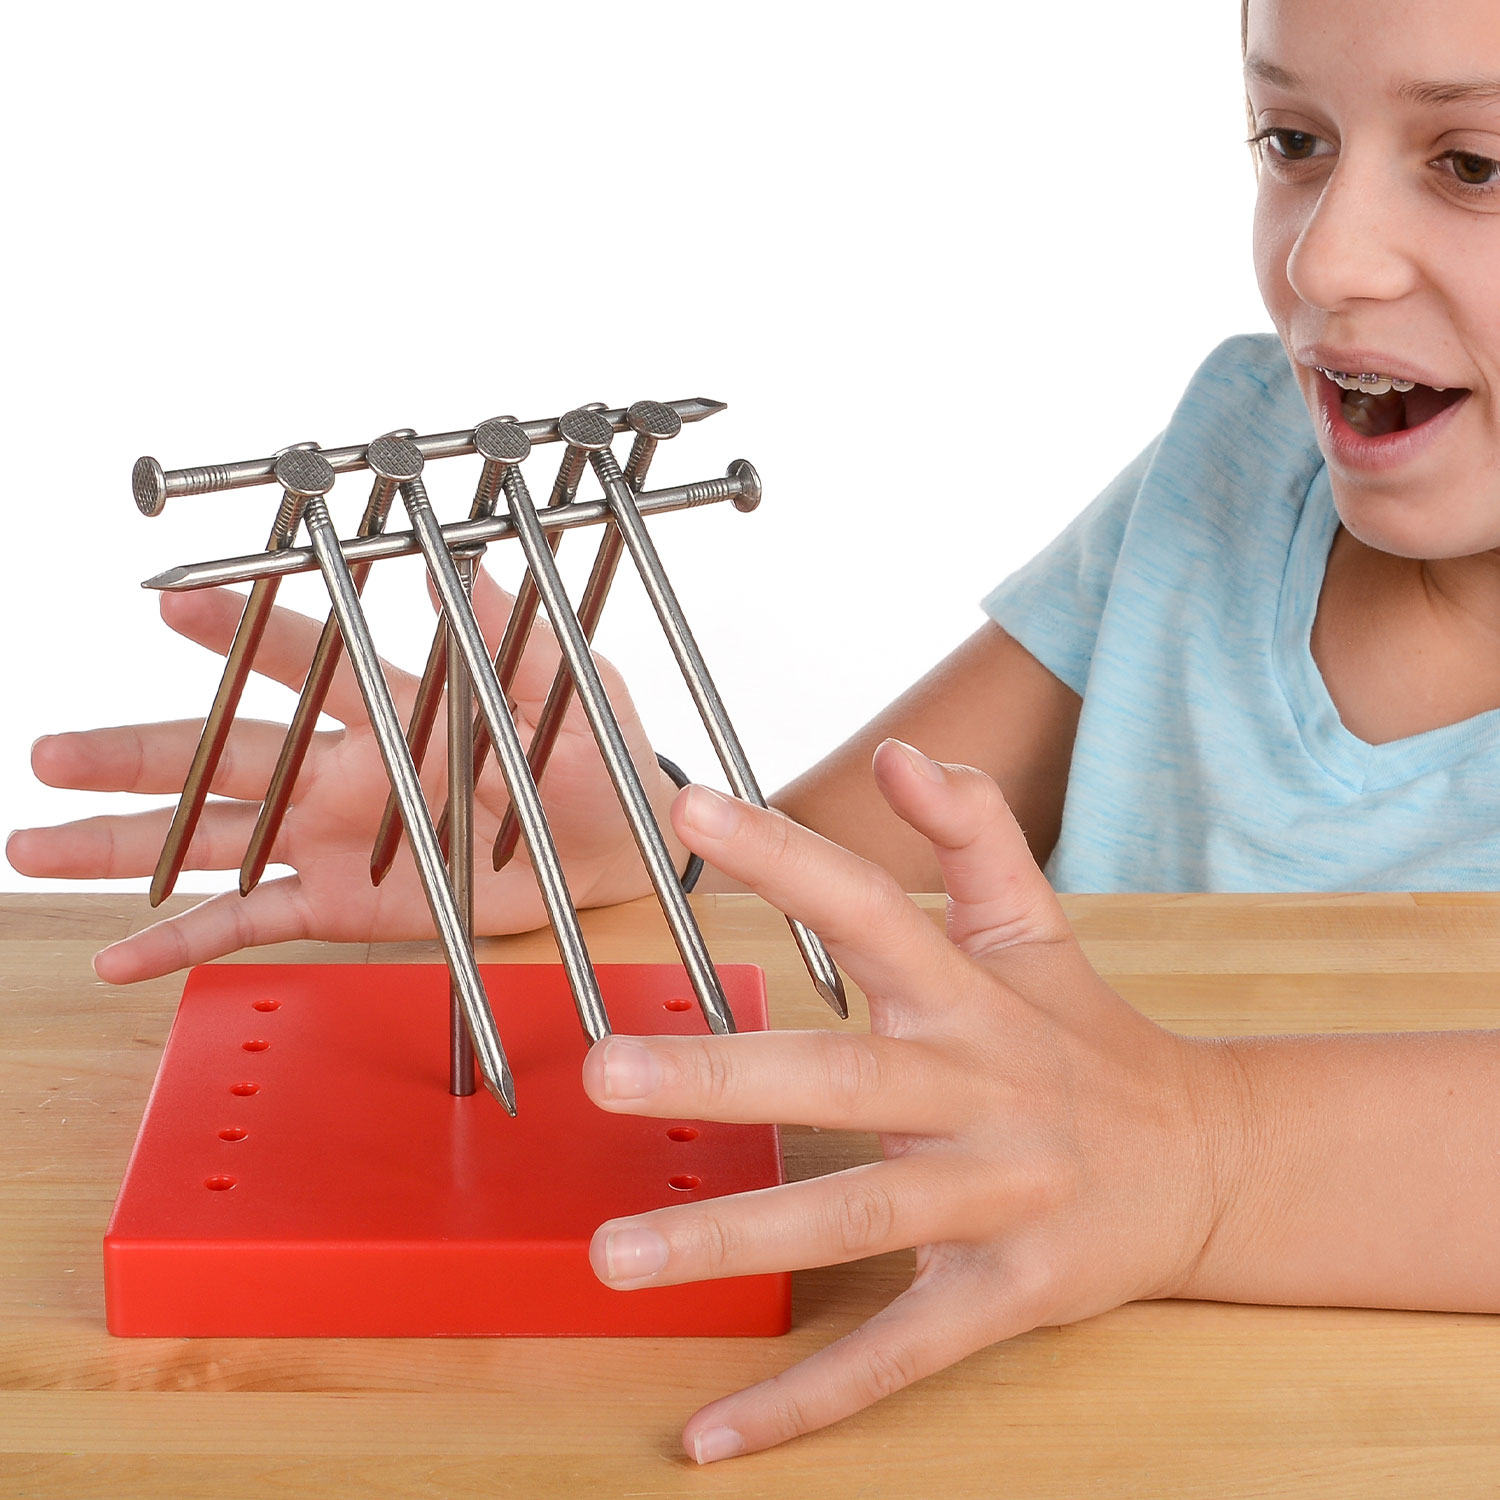 At Home Science - Balancing Nails